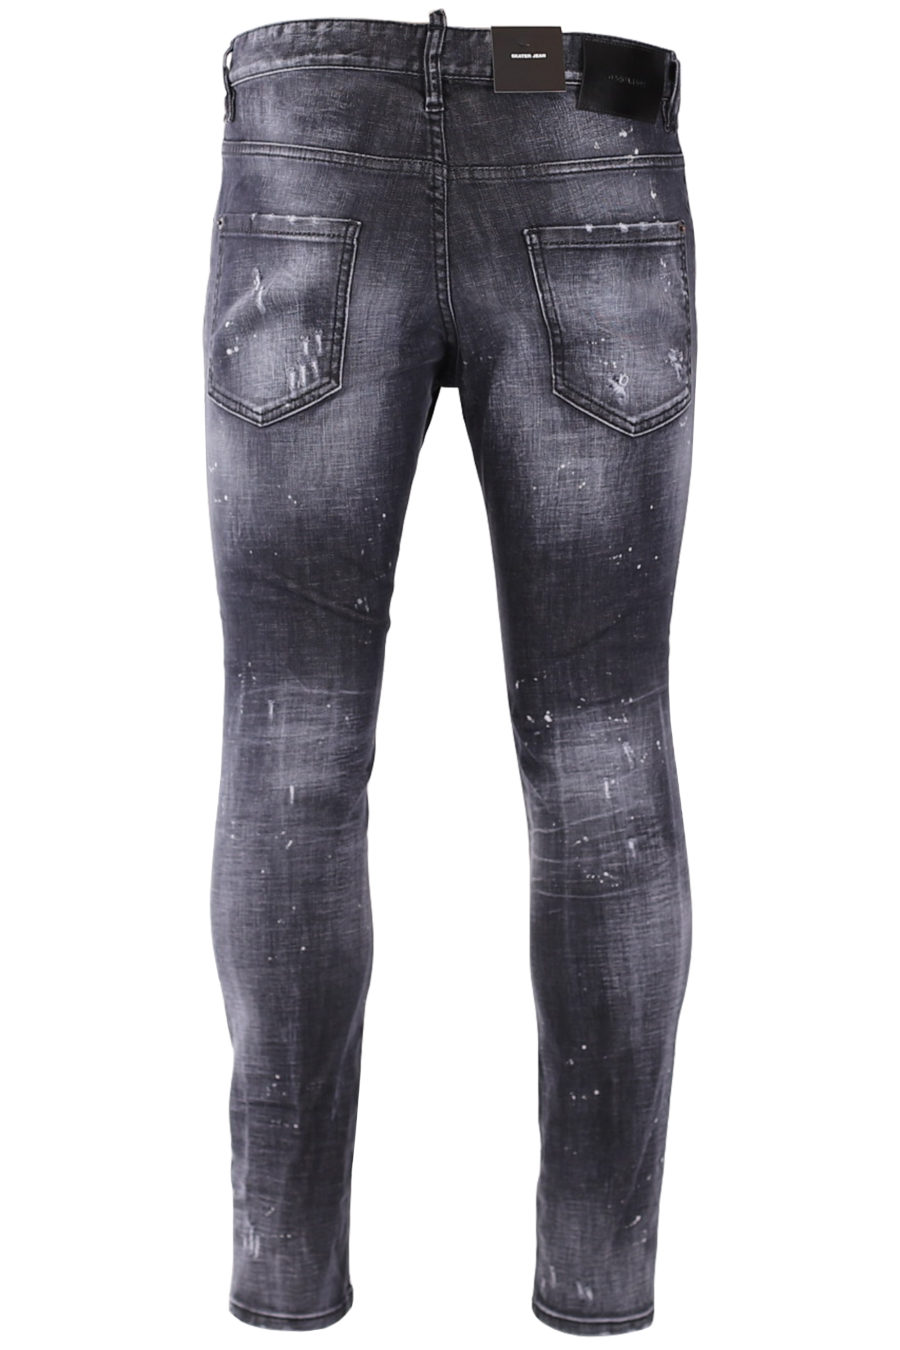 Schwarze "Skater" Jeans mit Reißverschluss - c94829affba1ec59cf58dfddf3fff4e13841afcf